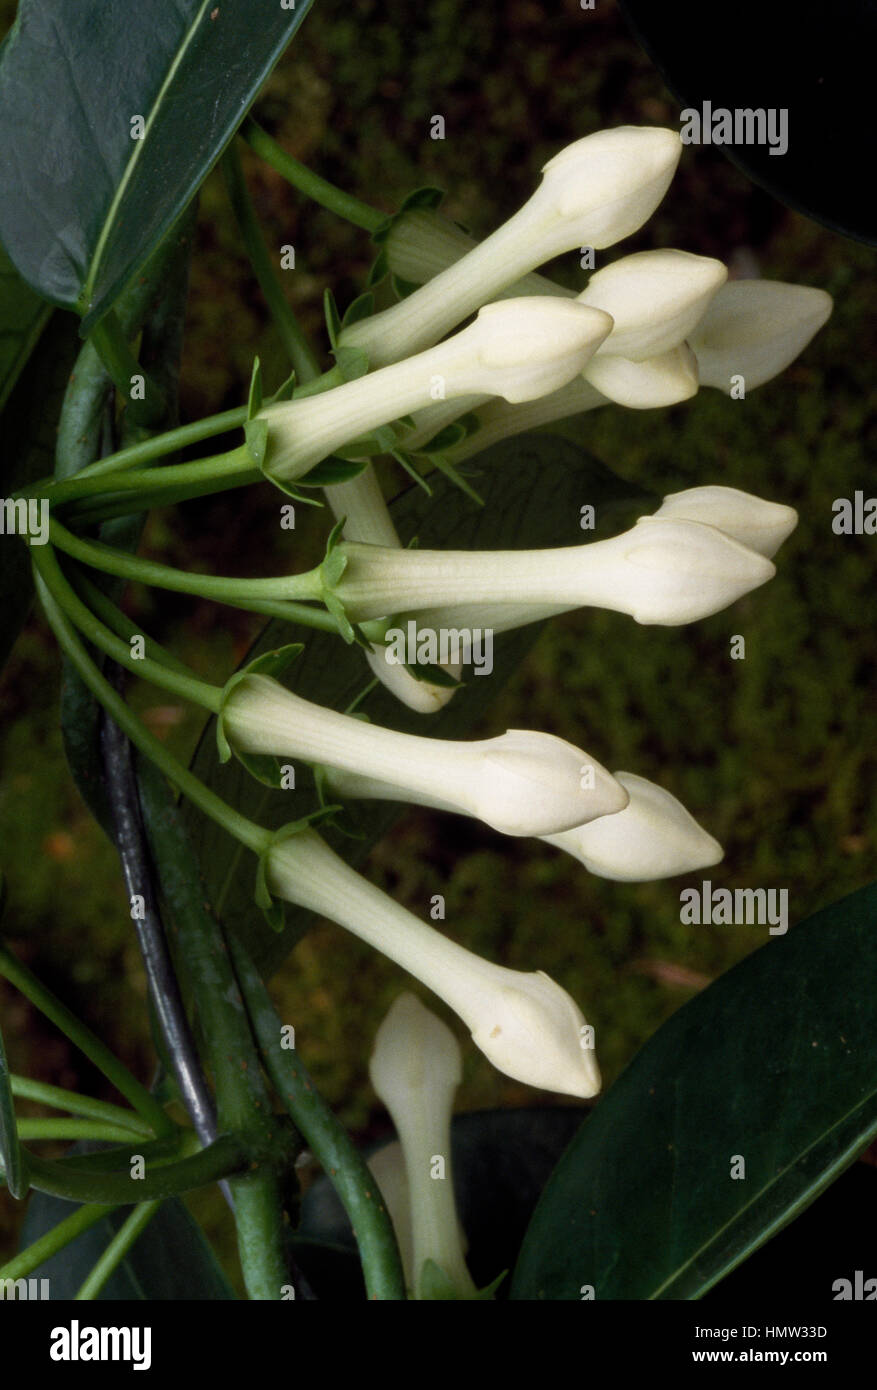 Madagascar Jasmine (Stephanotis floribunda), Apocynaceae. Stock Photo